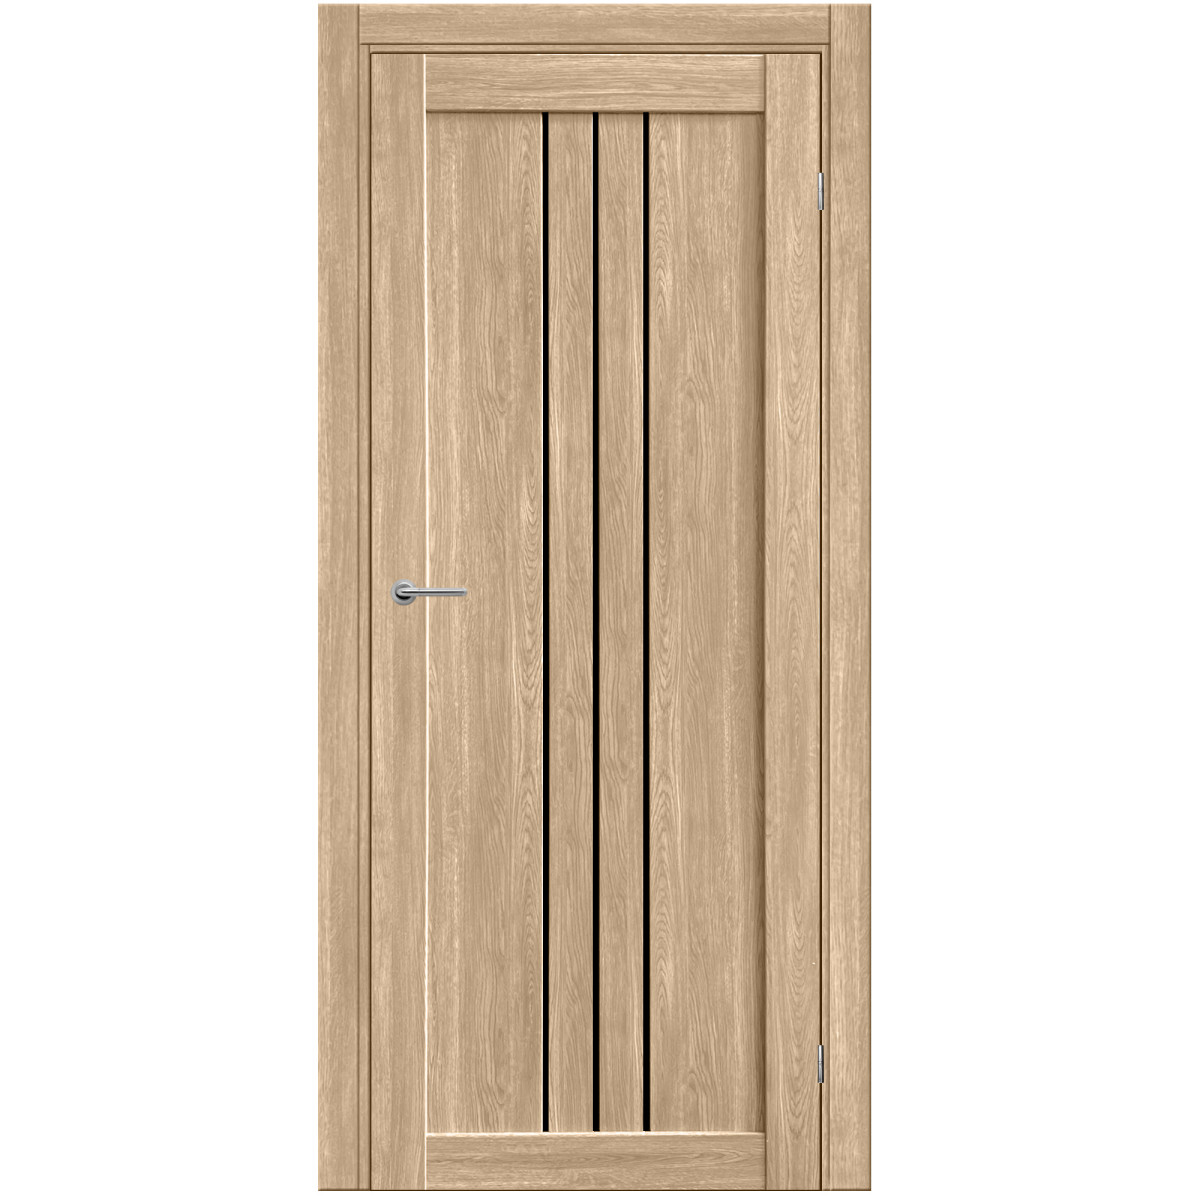 Дверь межкомнатная остеклённая Бергамо 80х200 см с фурнитурой, ПВХ, цвет европейский дуб